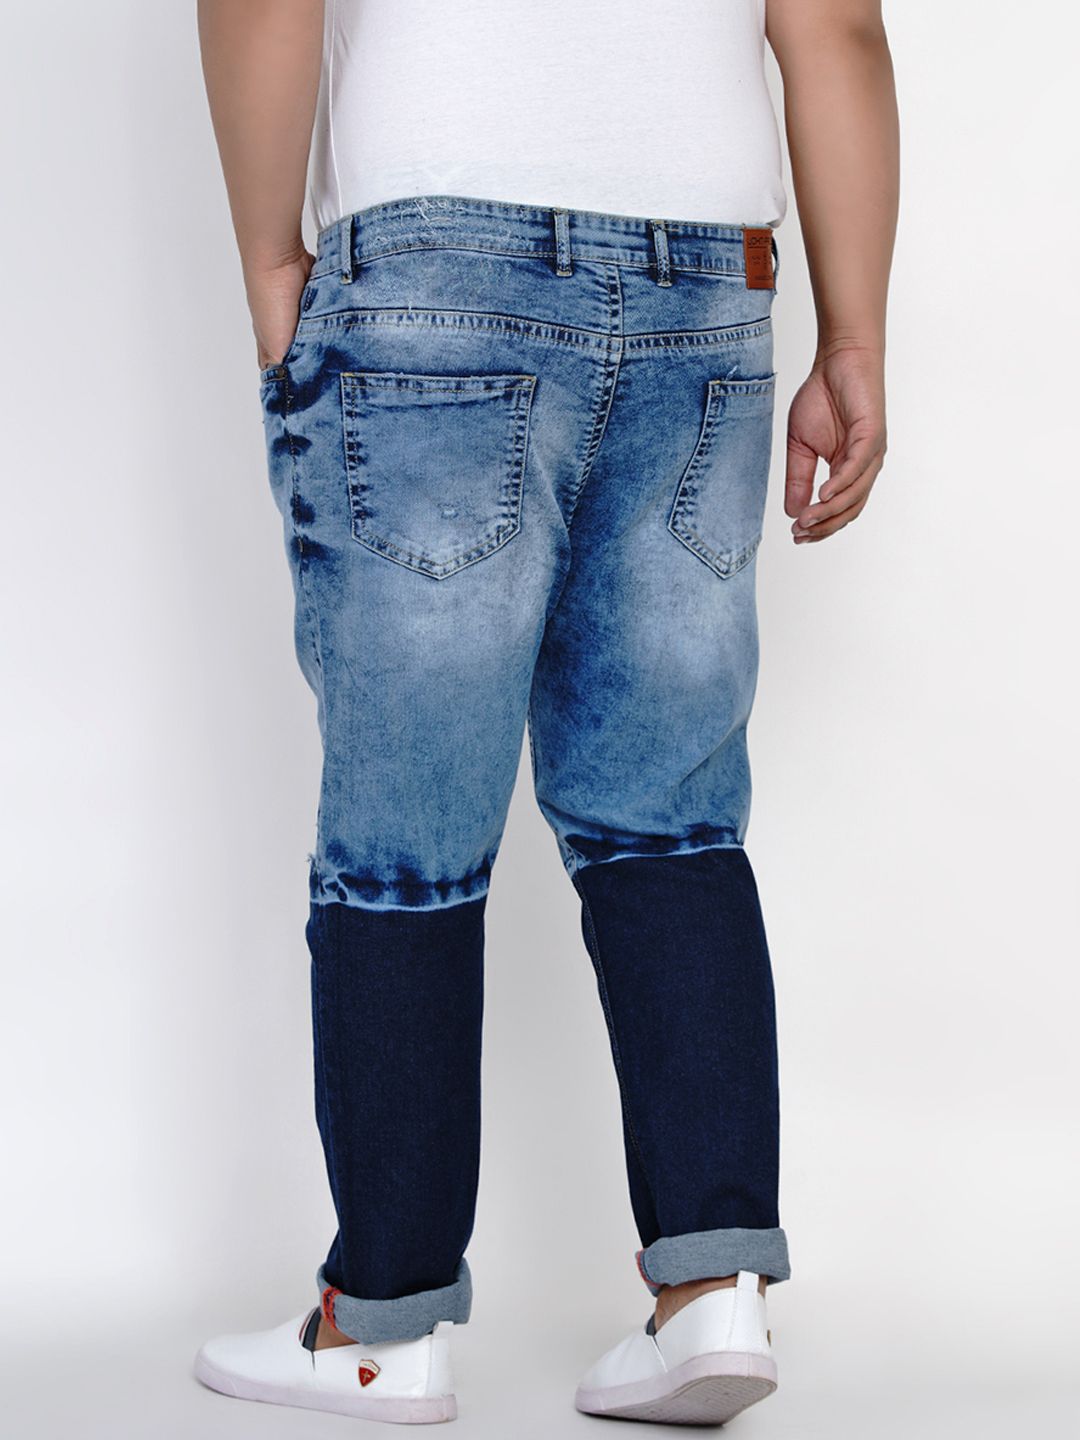 bottomwear/jeans/JPJ6000/jpj6000-5.jpg